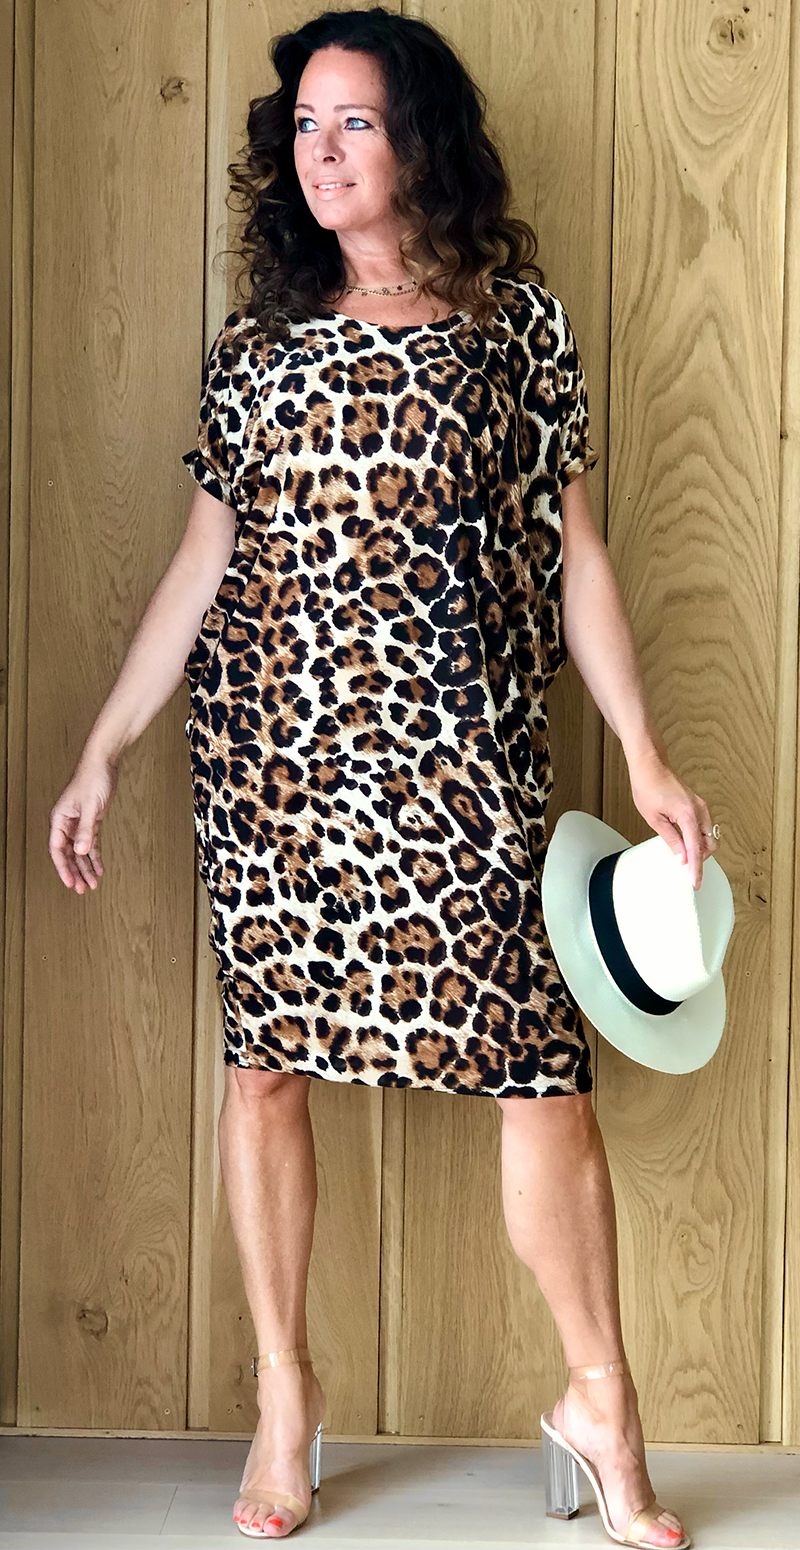 Plys dukke Ordliste Sommerhus Molly Kjole med åben ryg leopard Likelondon – LikeLondon.com